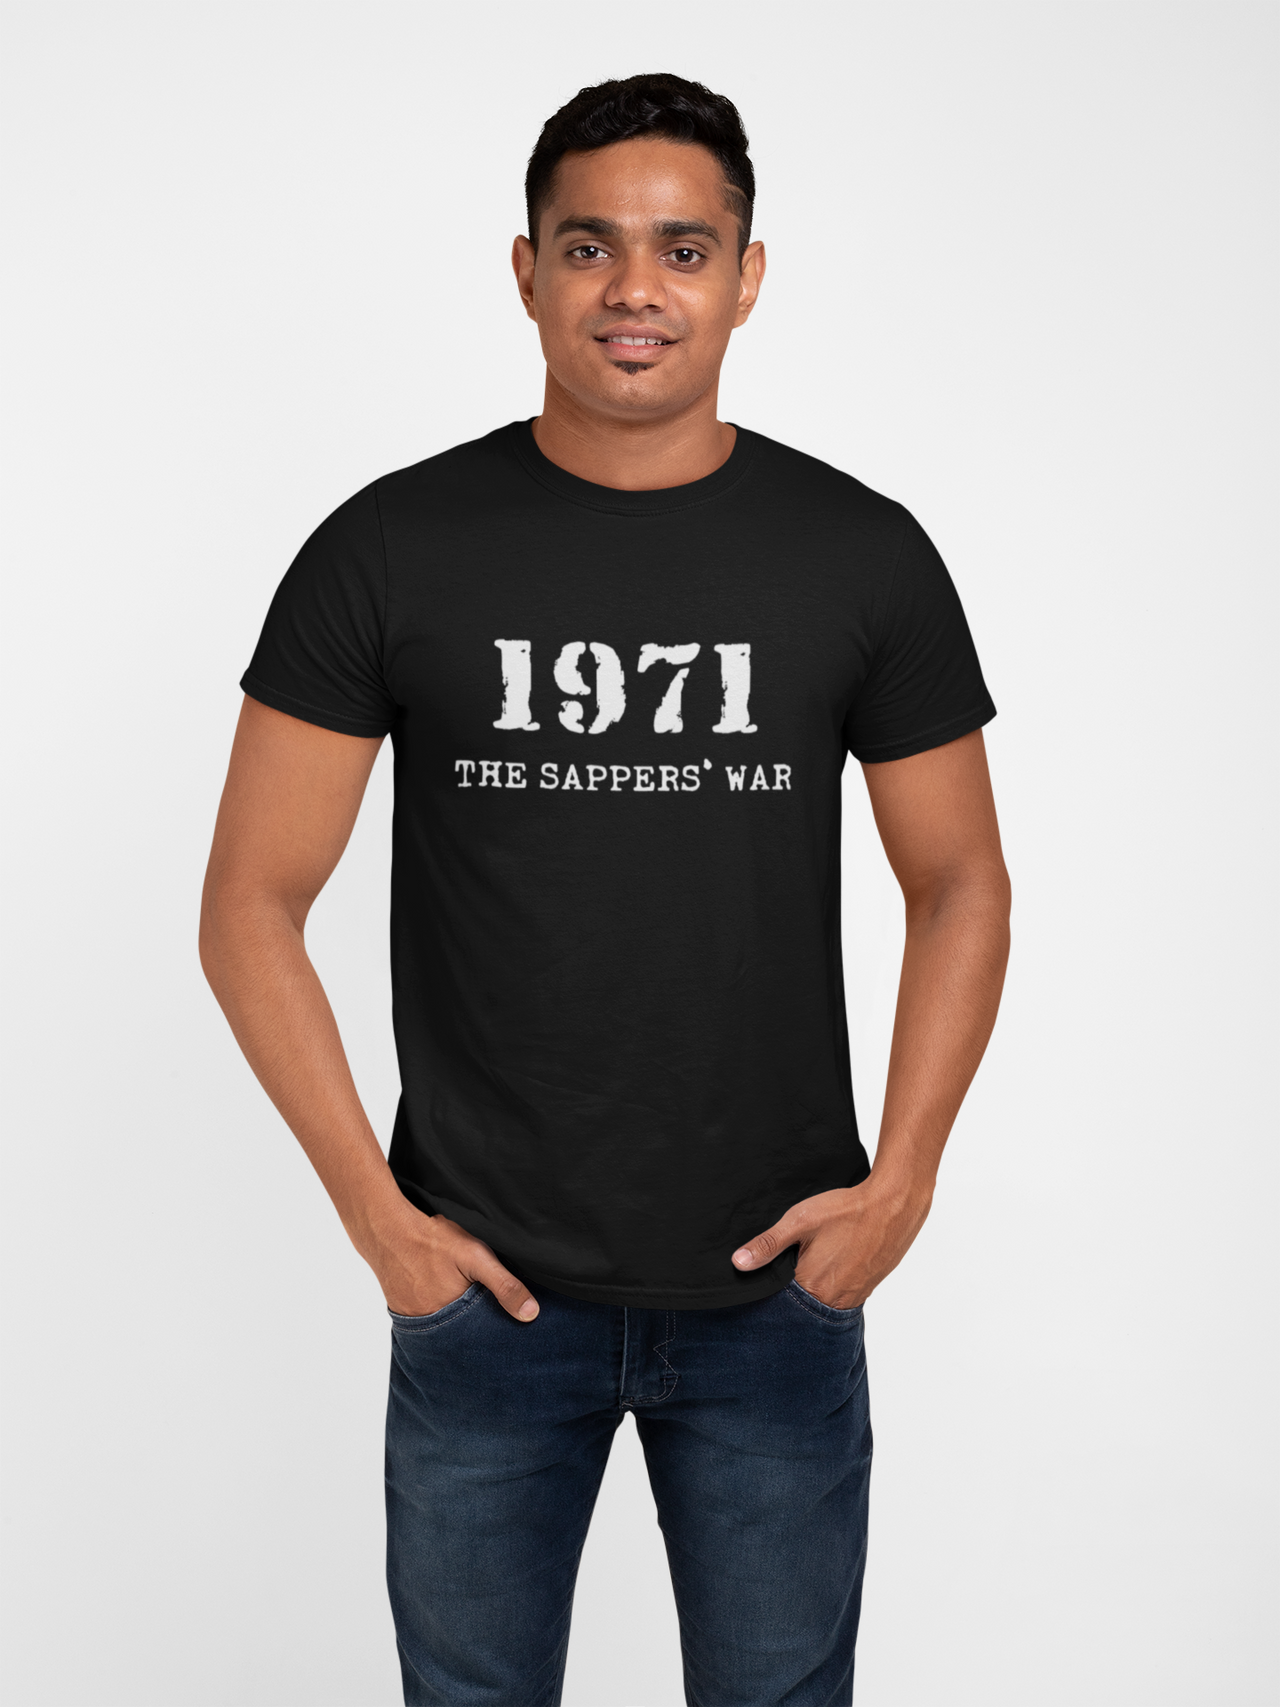 Sapper T-shirt - 1971 Sappers' War (Men)